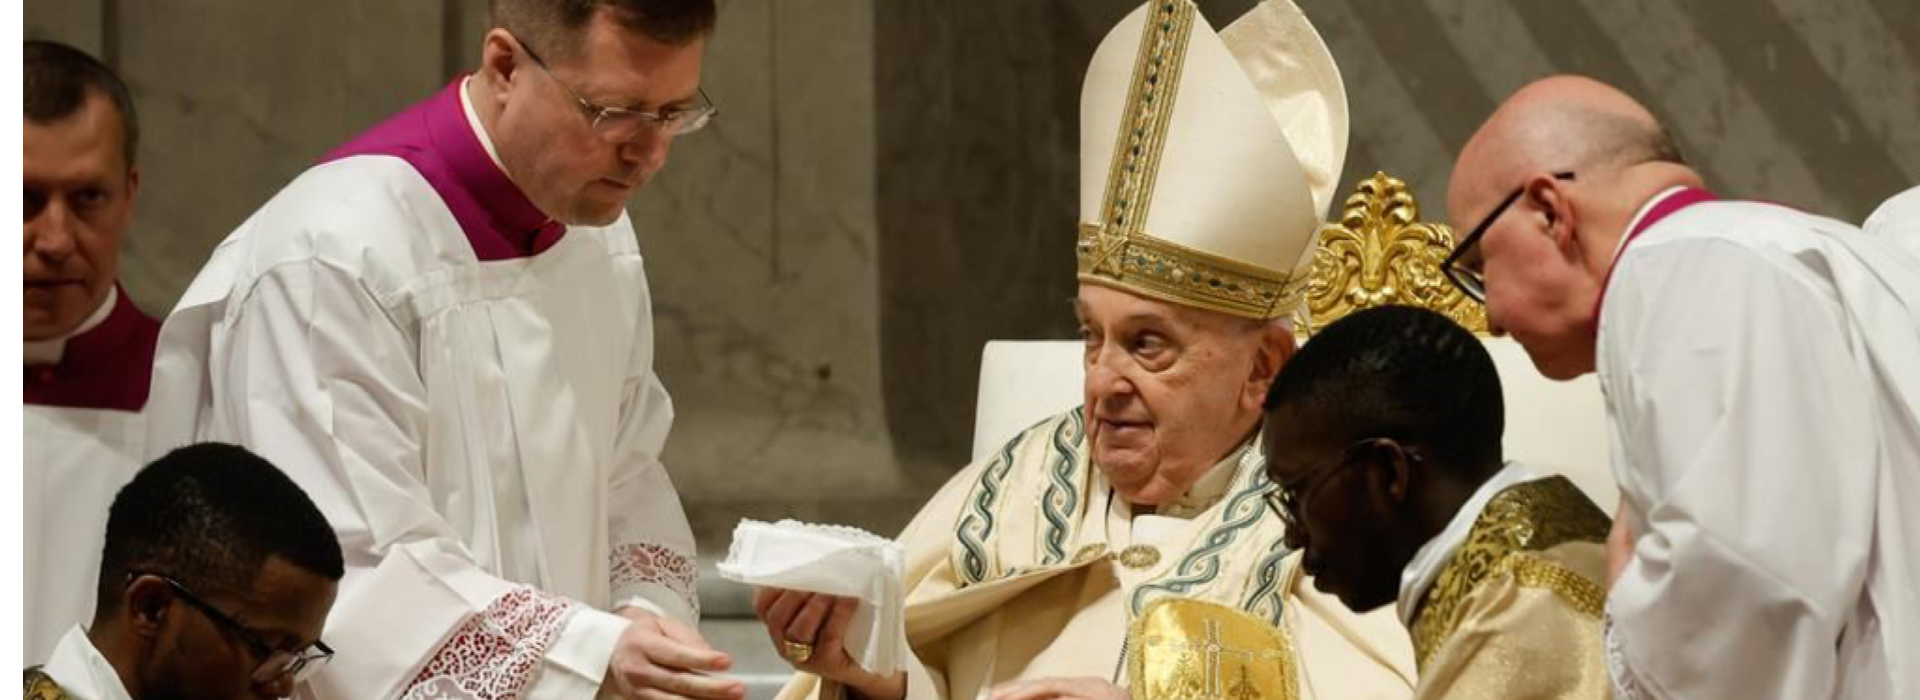 Il Trionfo della Luce: Papa Francesco Celebra la Veglia Pasquale nella Basilica di San Pietro